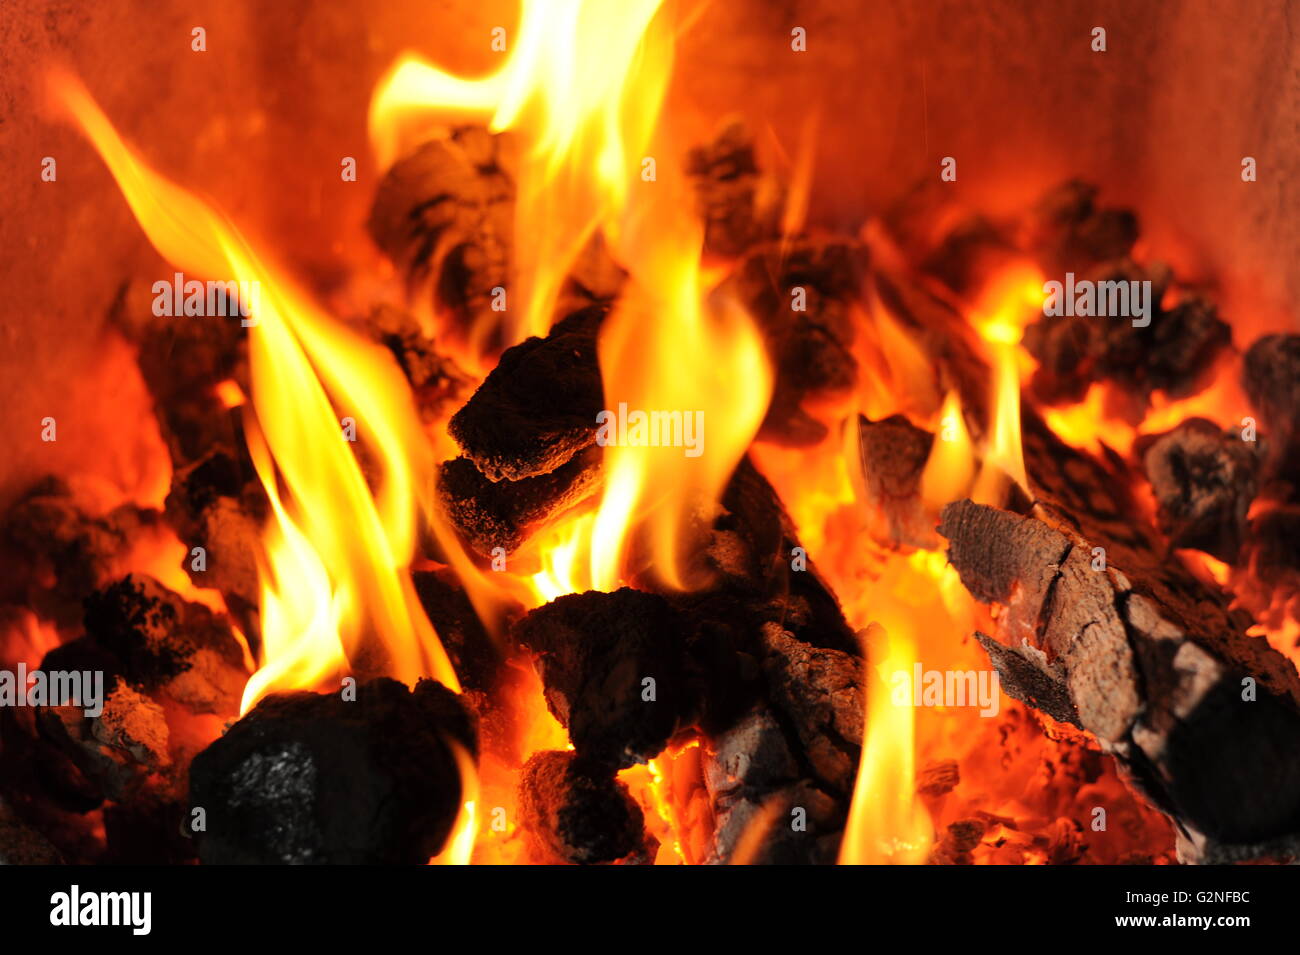 La combustion de charbon dans une cheminée Banque D'Images